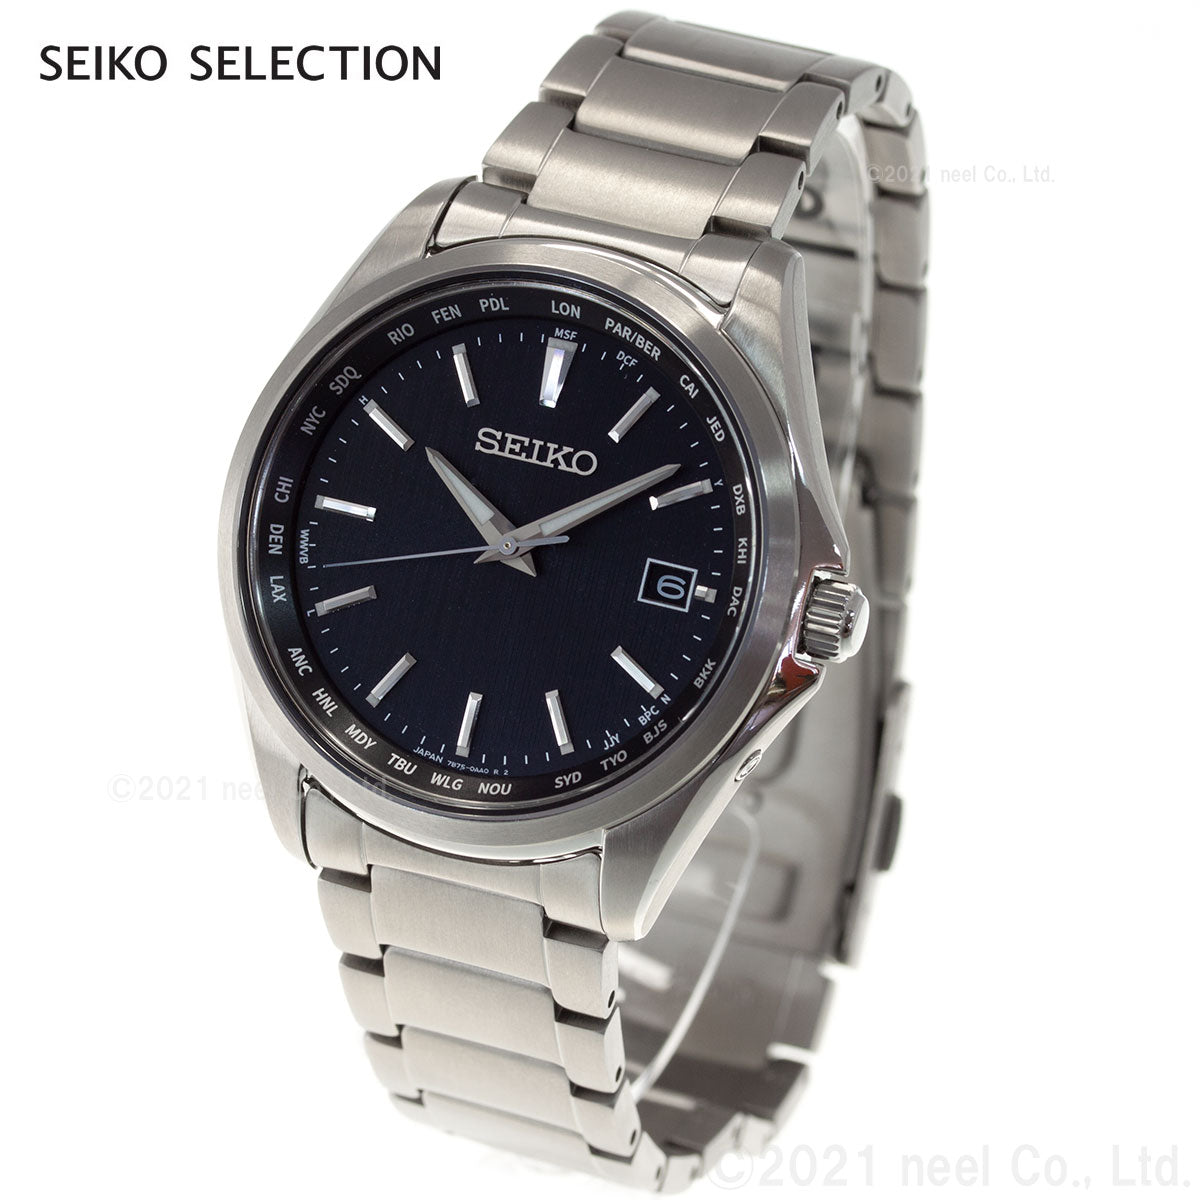 セイコー セレクション SEIKO SELECTION 電波 ソーラー 電波時計 腕時計 メンズ SBTM291